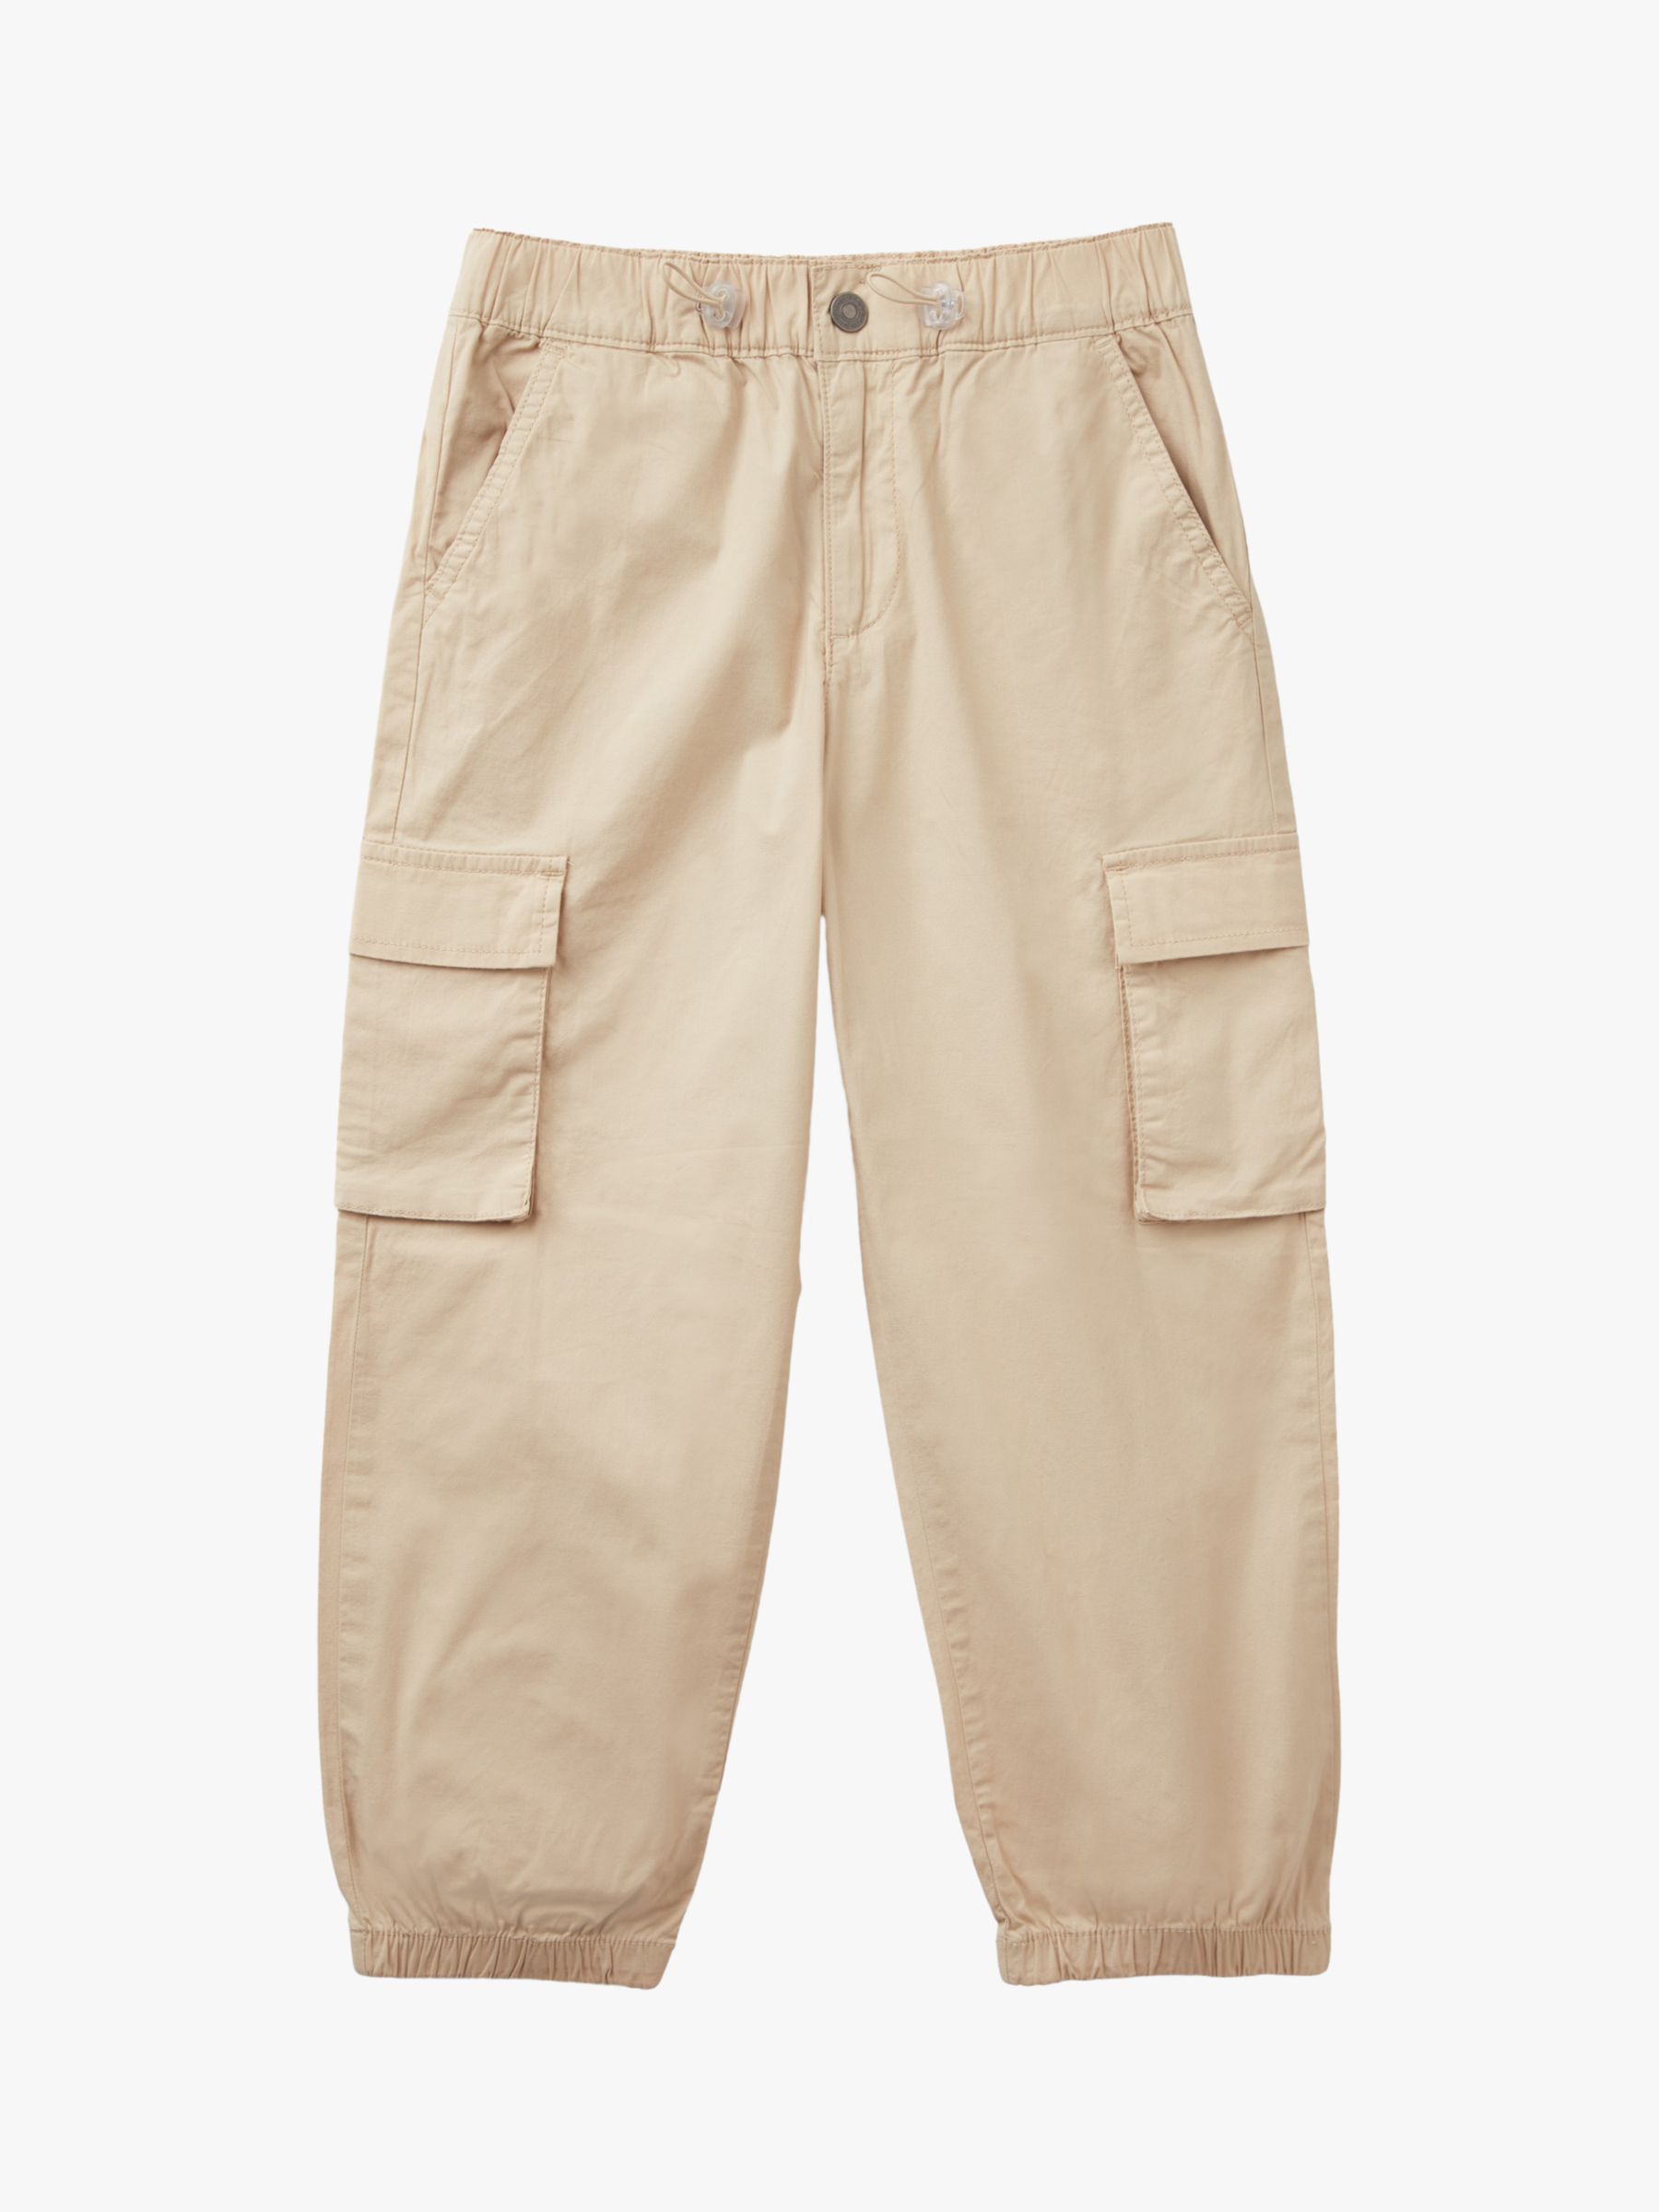 Benetton Kids' Cargo Trousers, Light Beige, 6-7 years